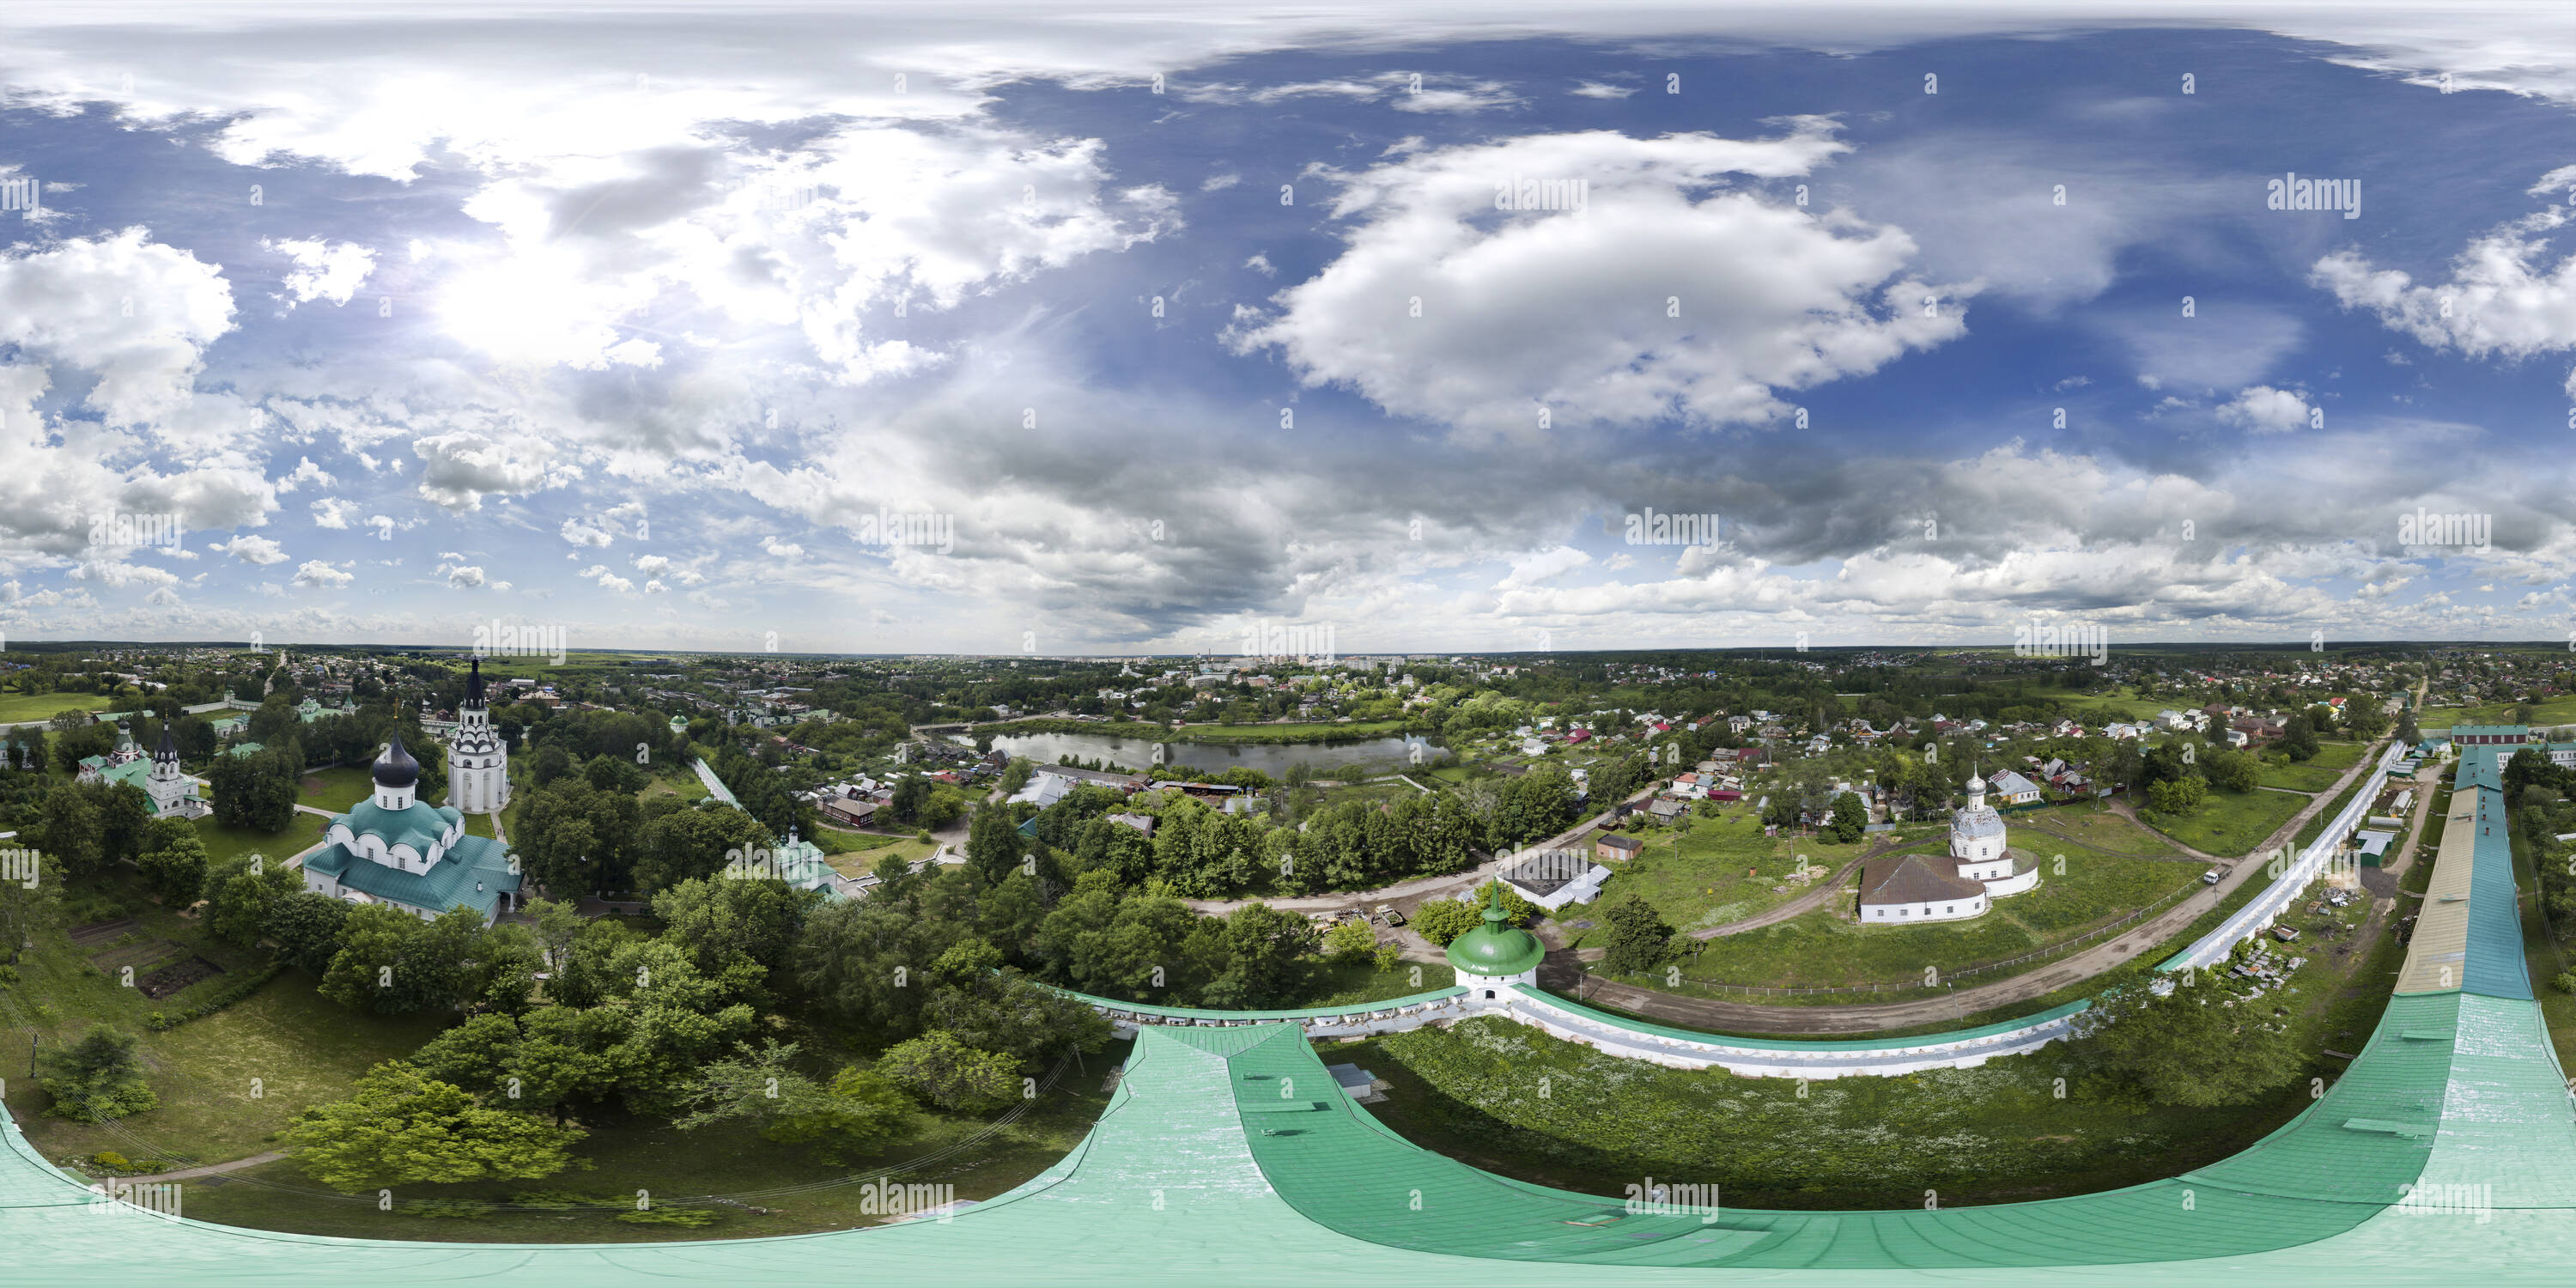 Visualizzazione panoramica a 360 gradi di Cremlino Alexandrov1